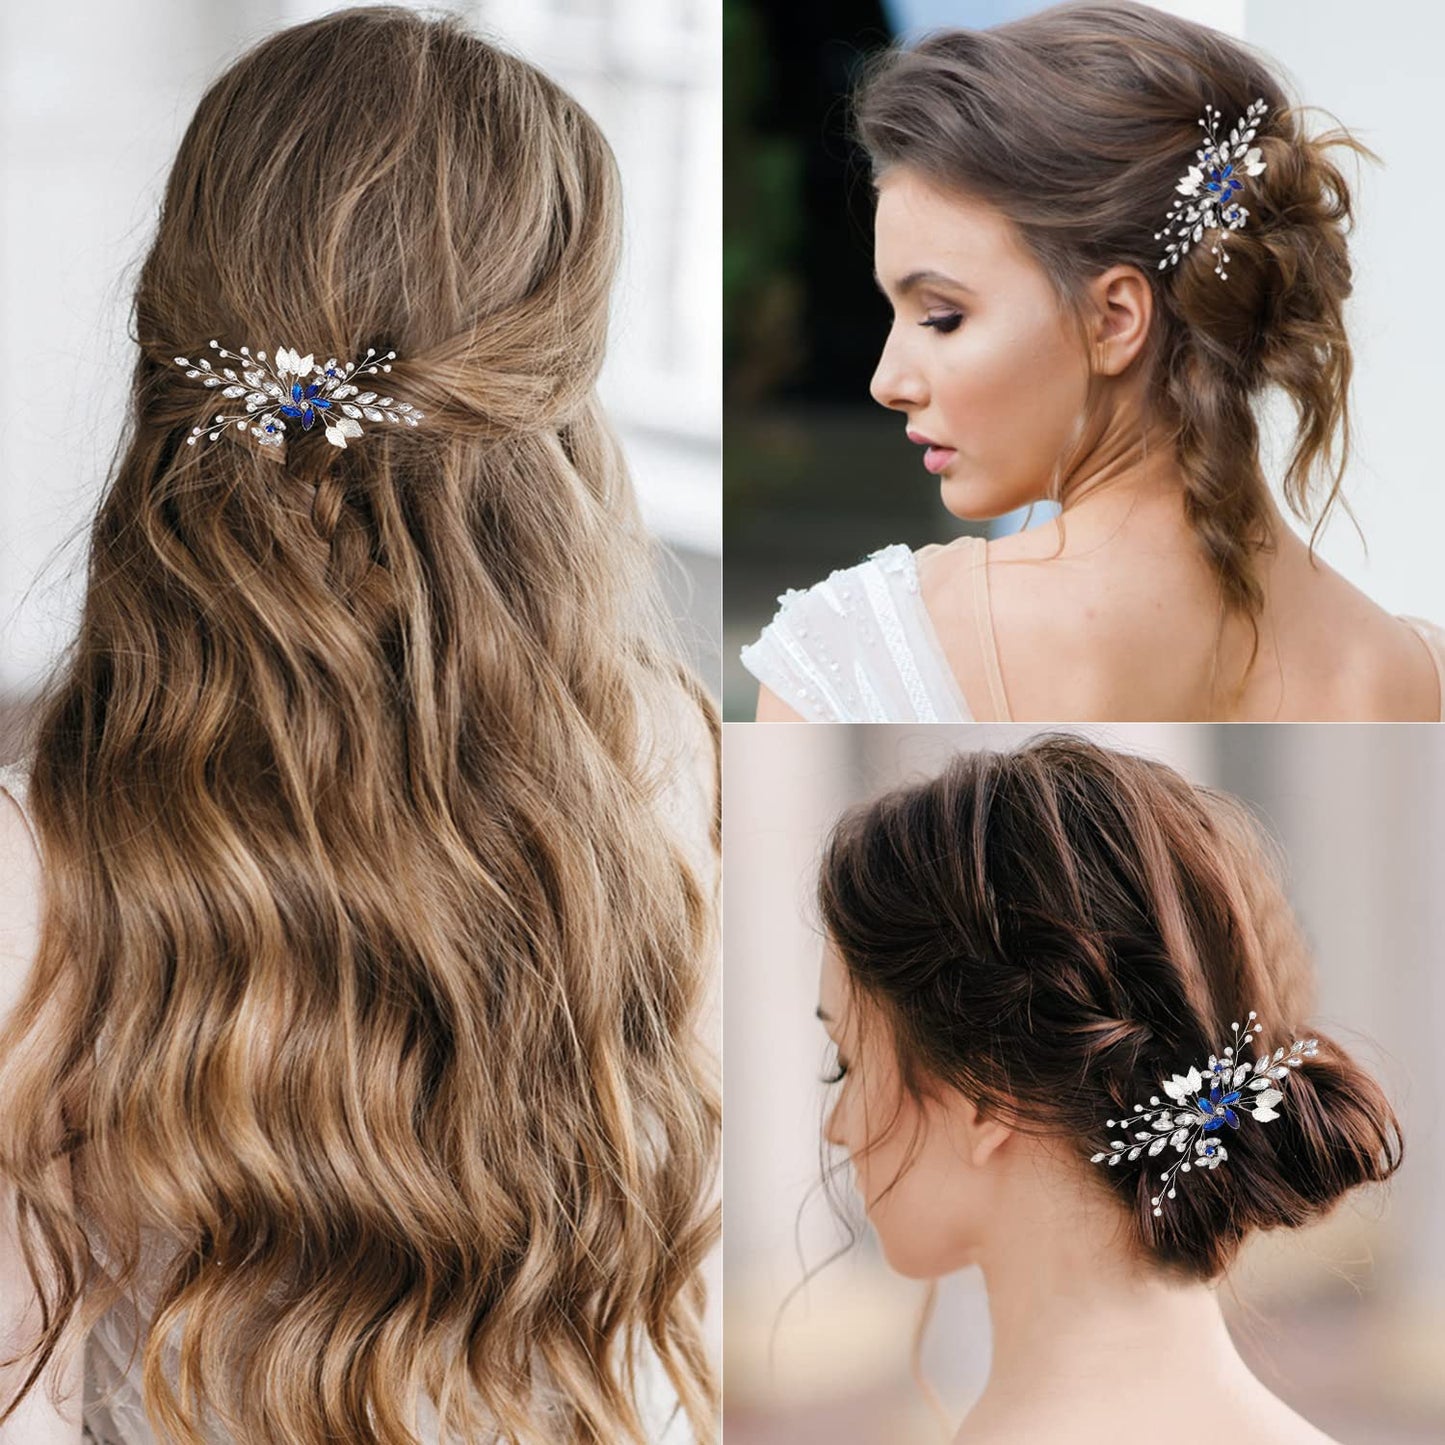 Wedding Hair Clips, Crystal Bride Bridesmaid Hair Pins Pearl Rhinestone Hair Clips, Crystal Flower Hairpins Hair Accessories for Women Girls